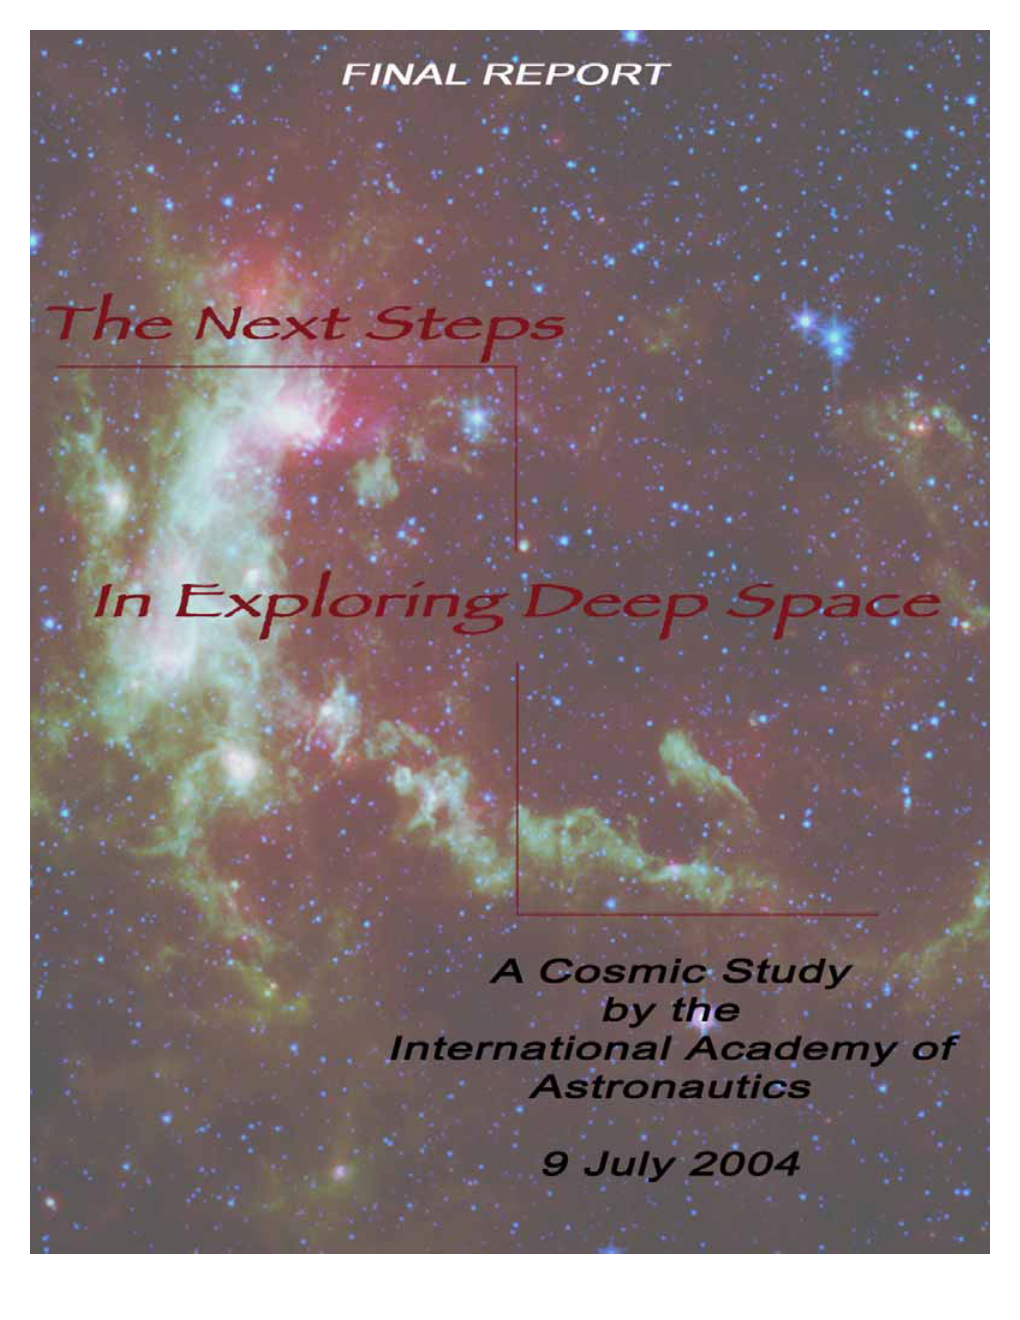 The Next Steps in Exploring Deep Space” at ESTEC, Noordwijk, Netherlands, Sept 22-23, 2003